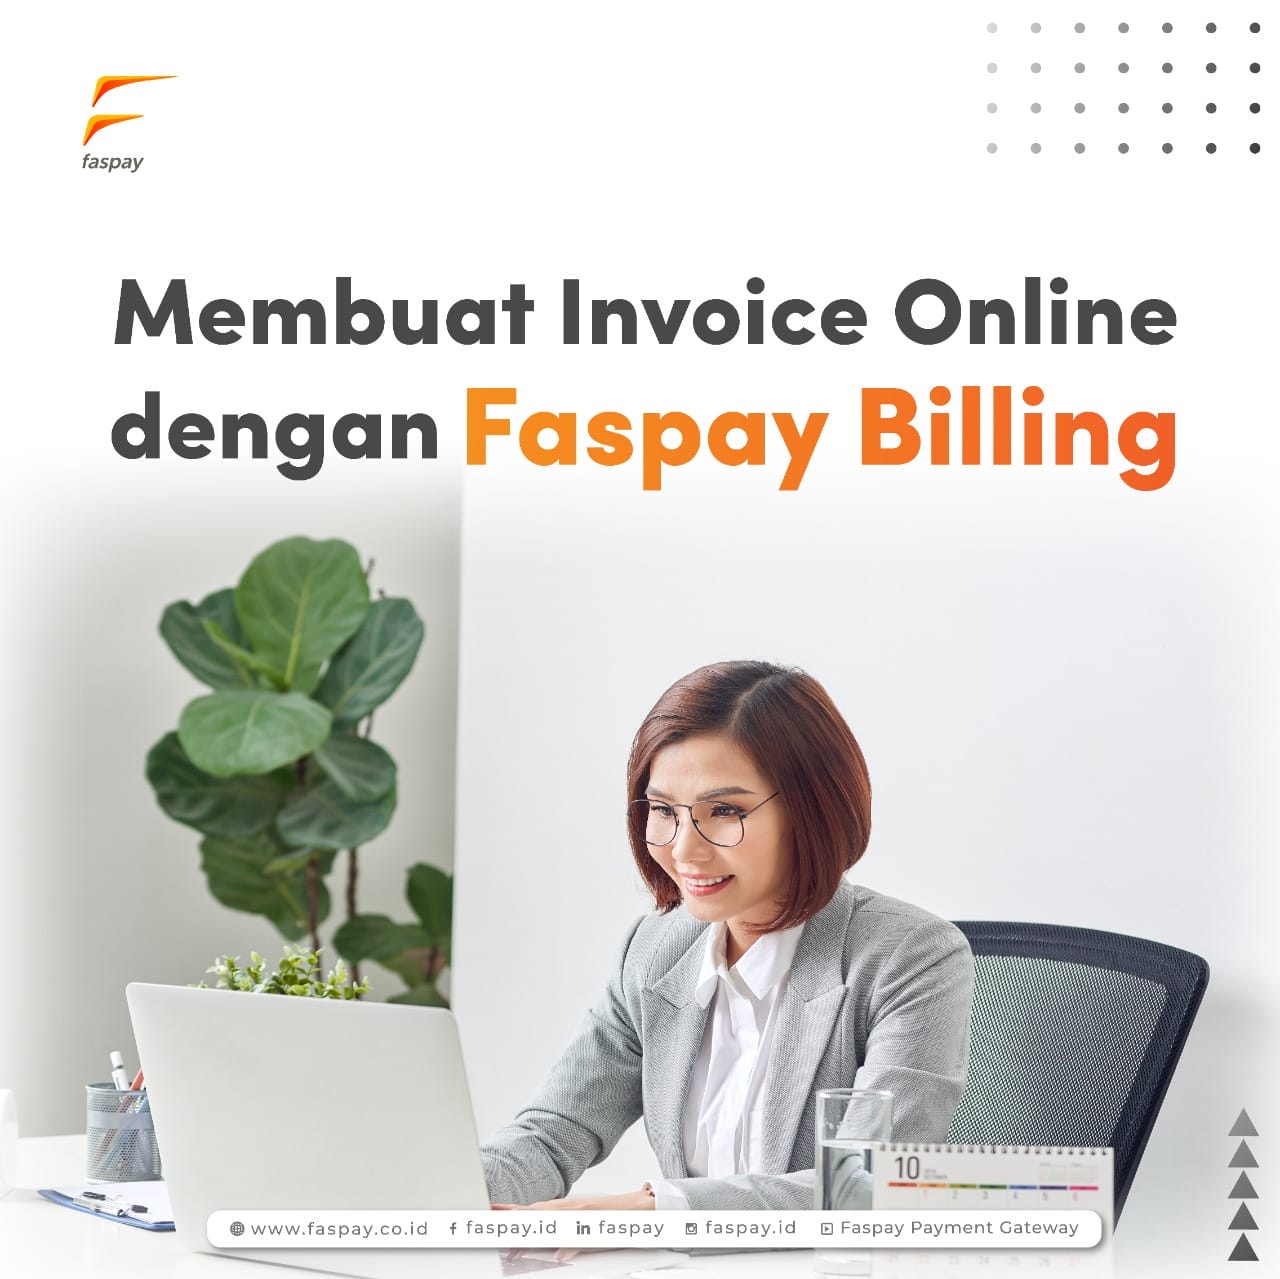 Membuat Invoice Online dengan Faspay Billing